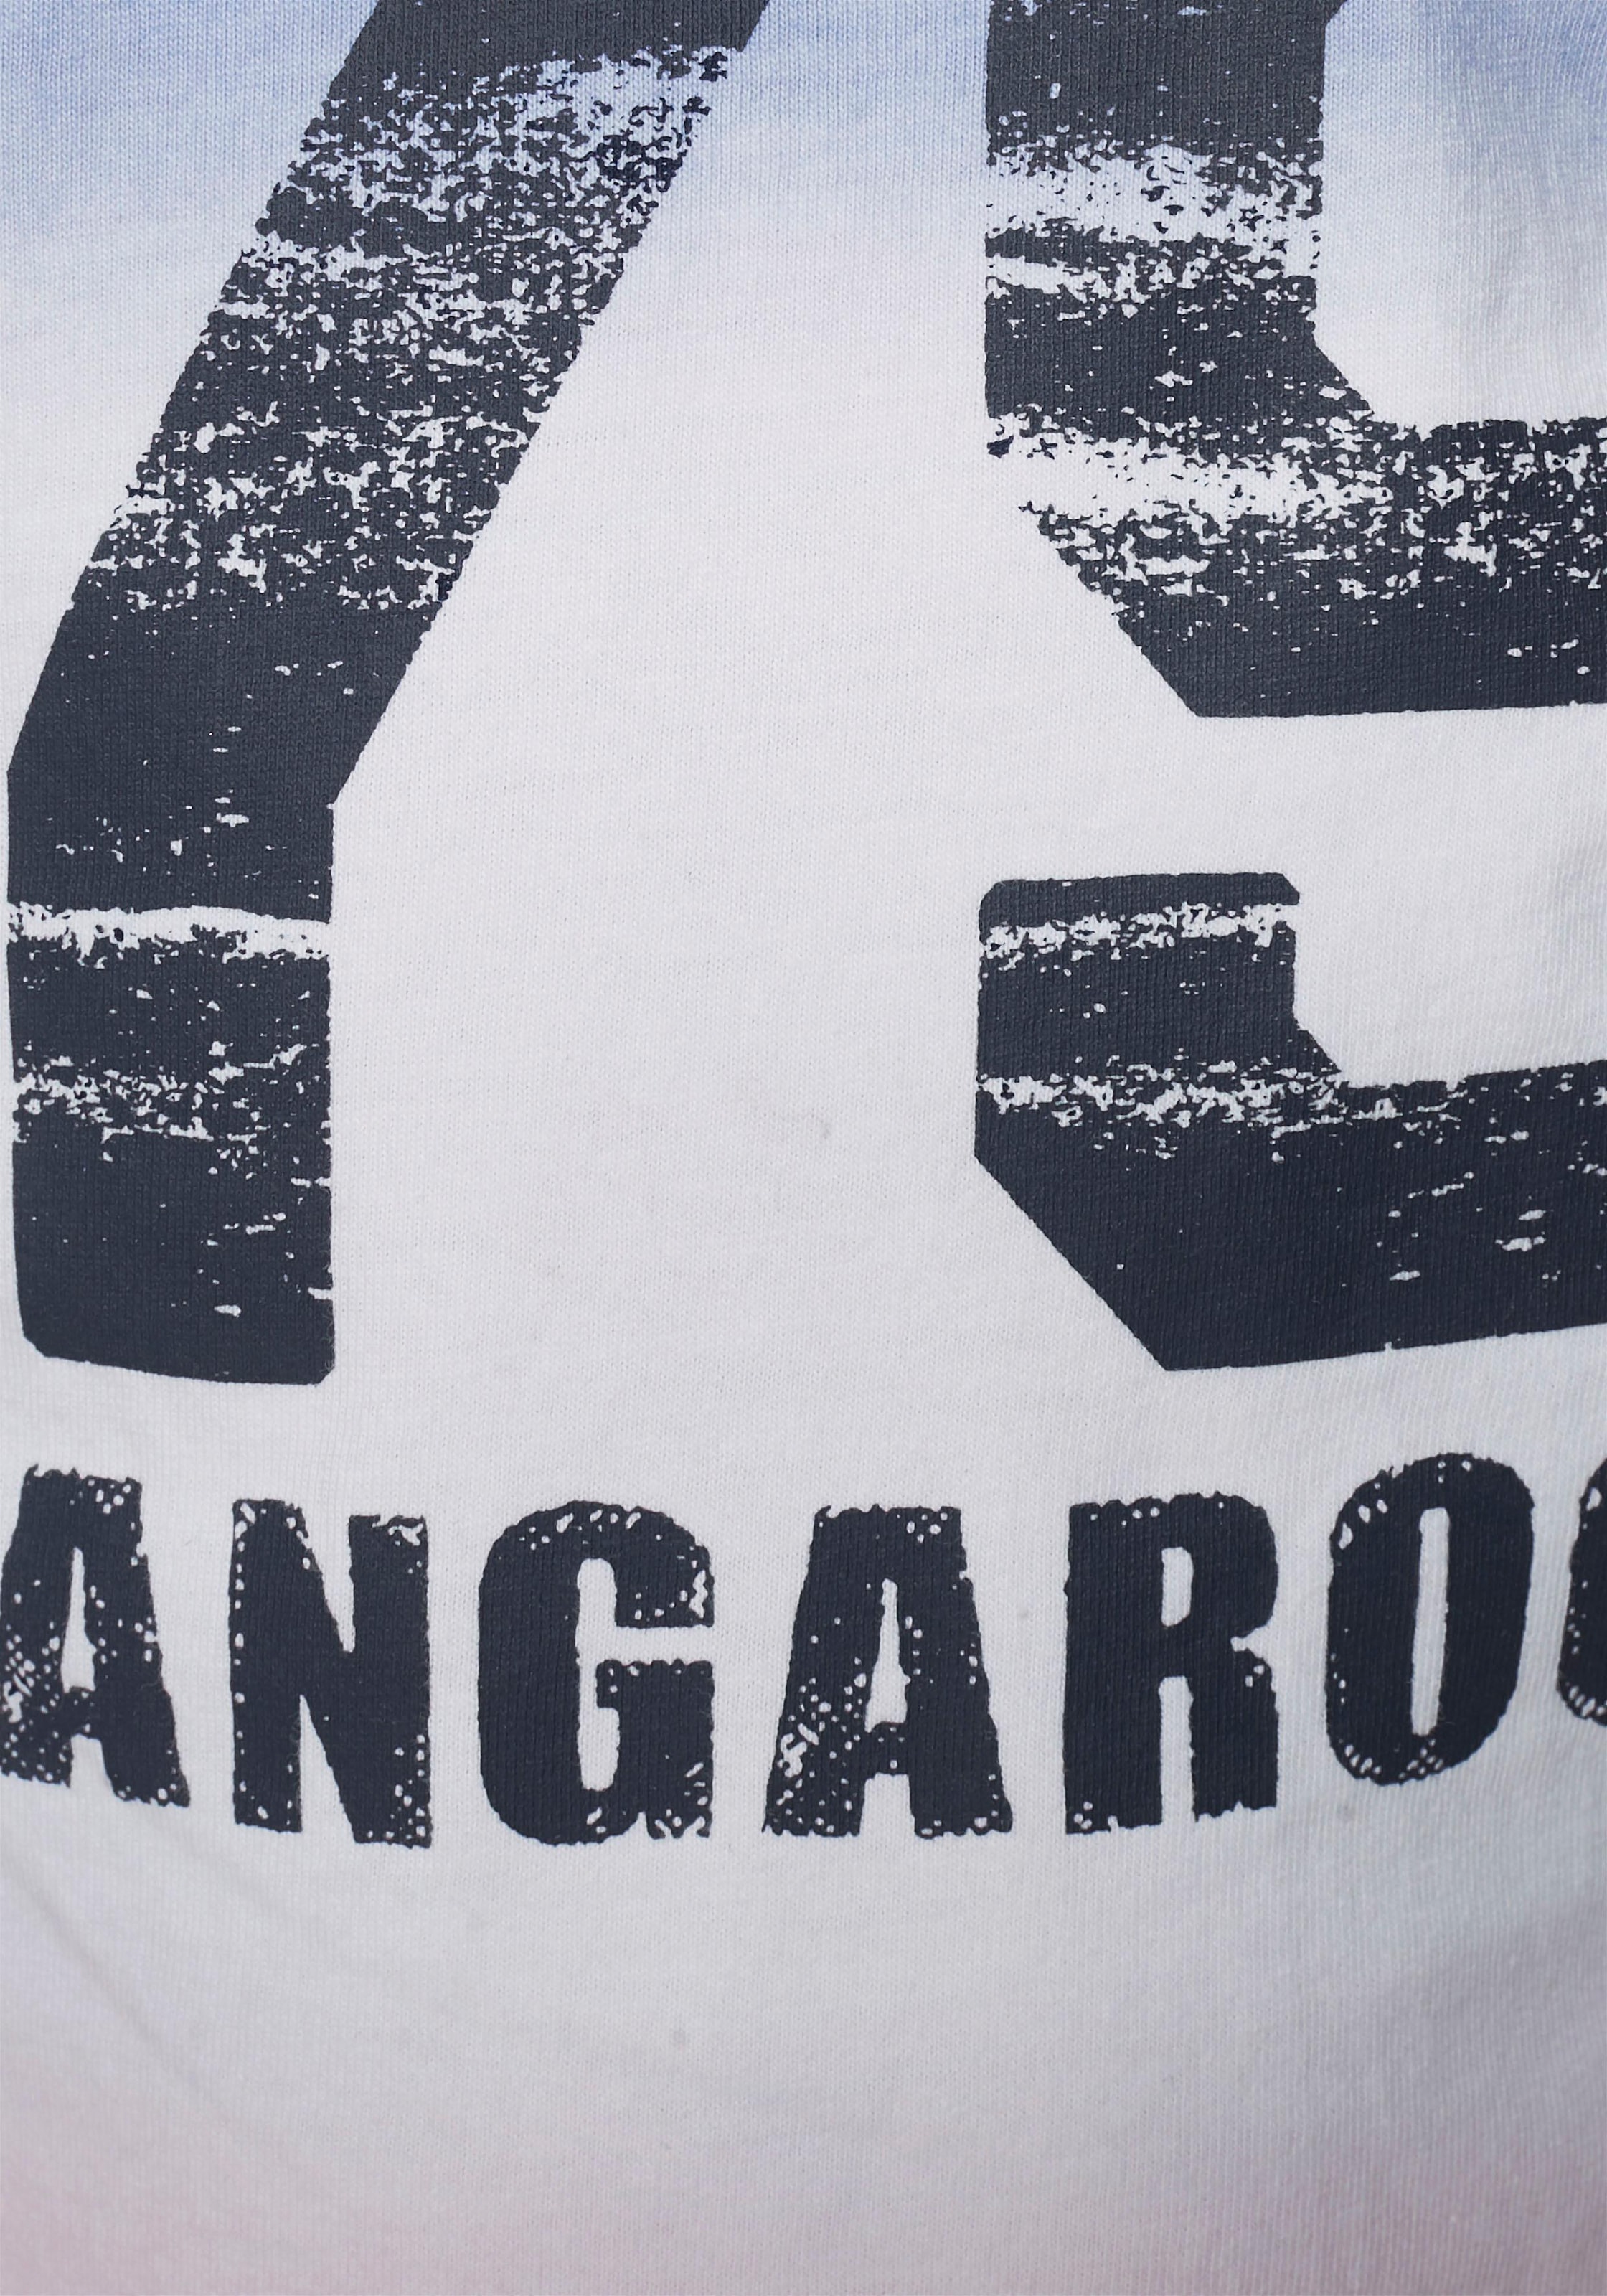 KangaROOS Langarmshirt, mit modischem Farbverlauf